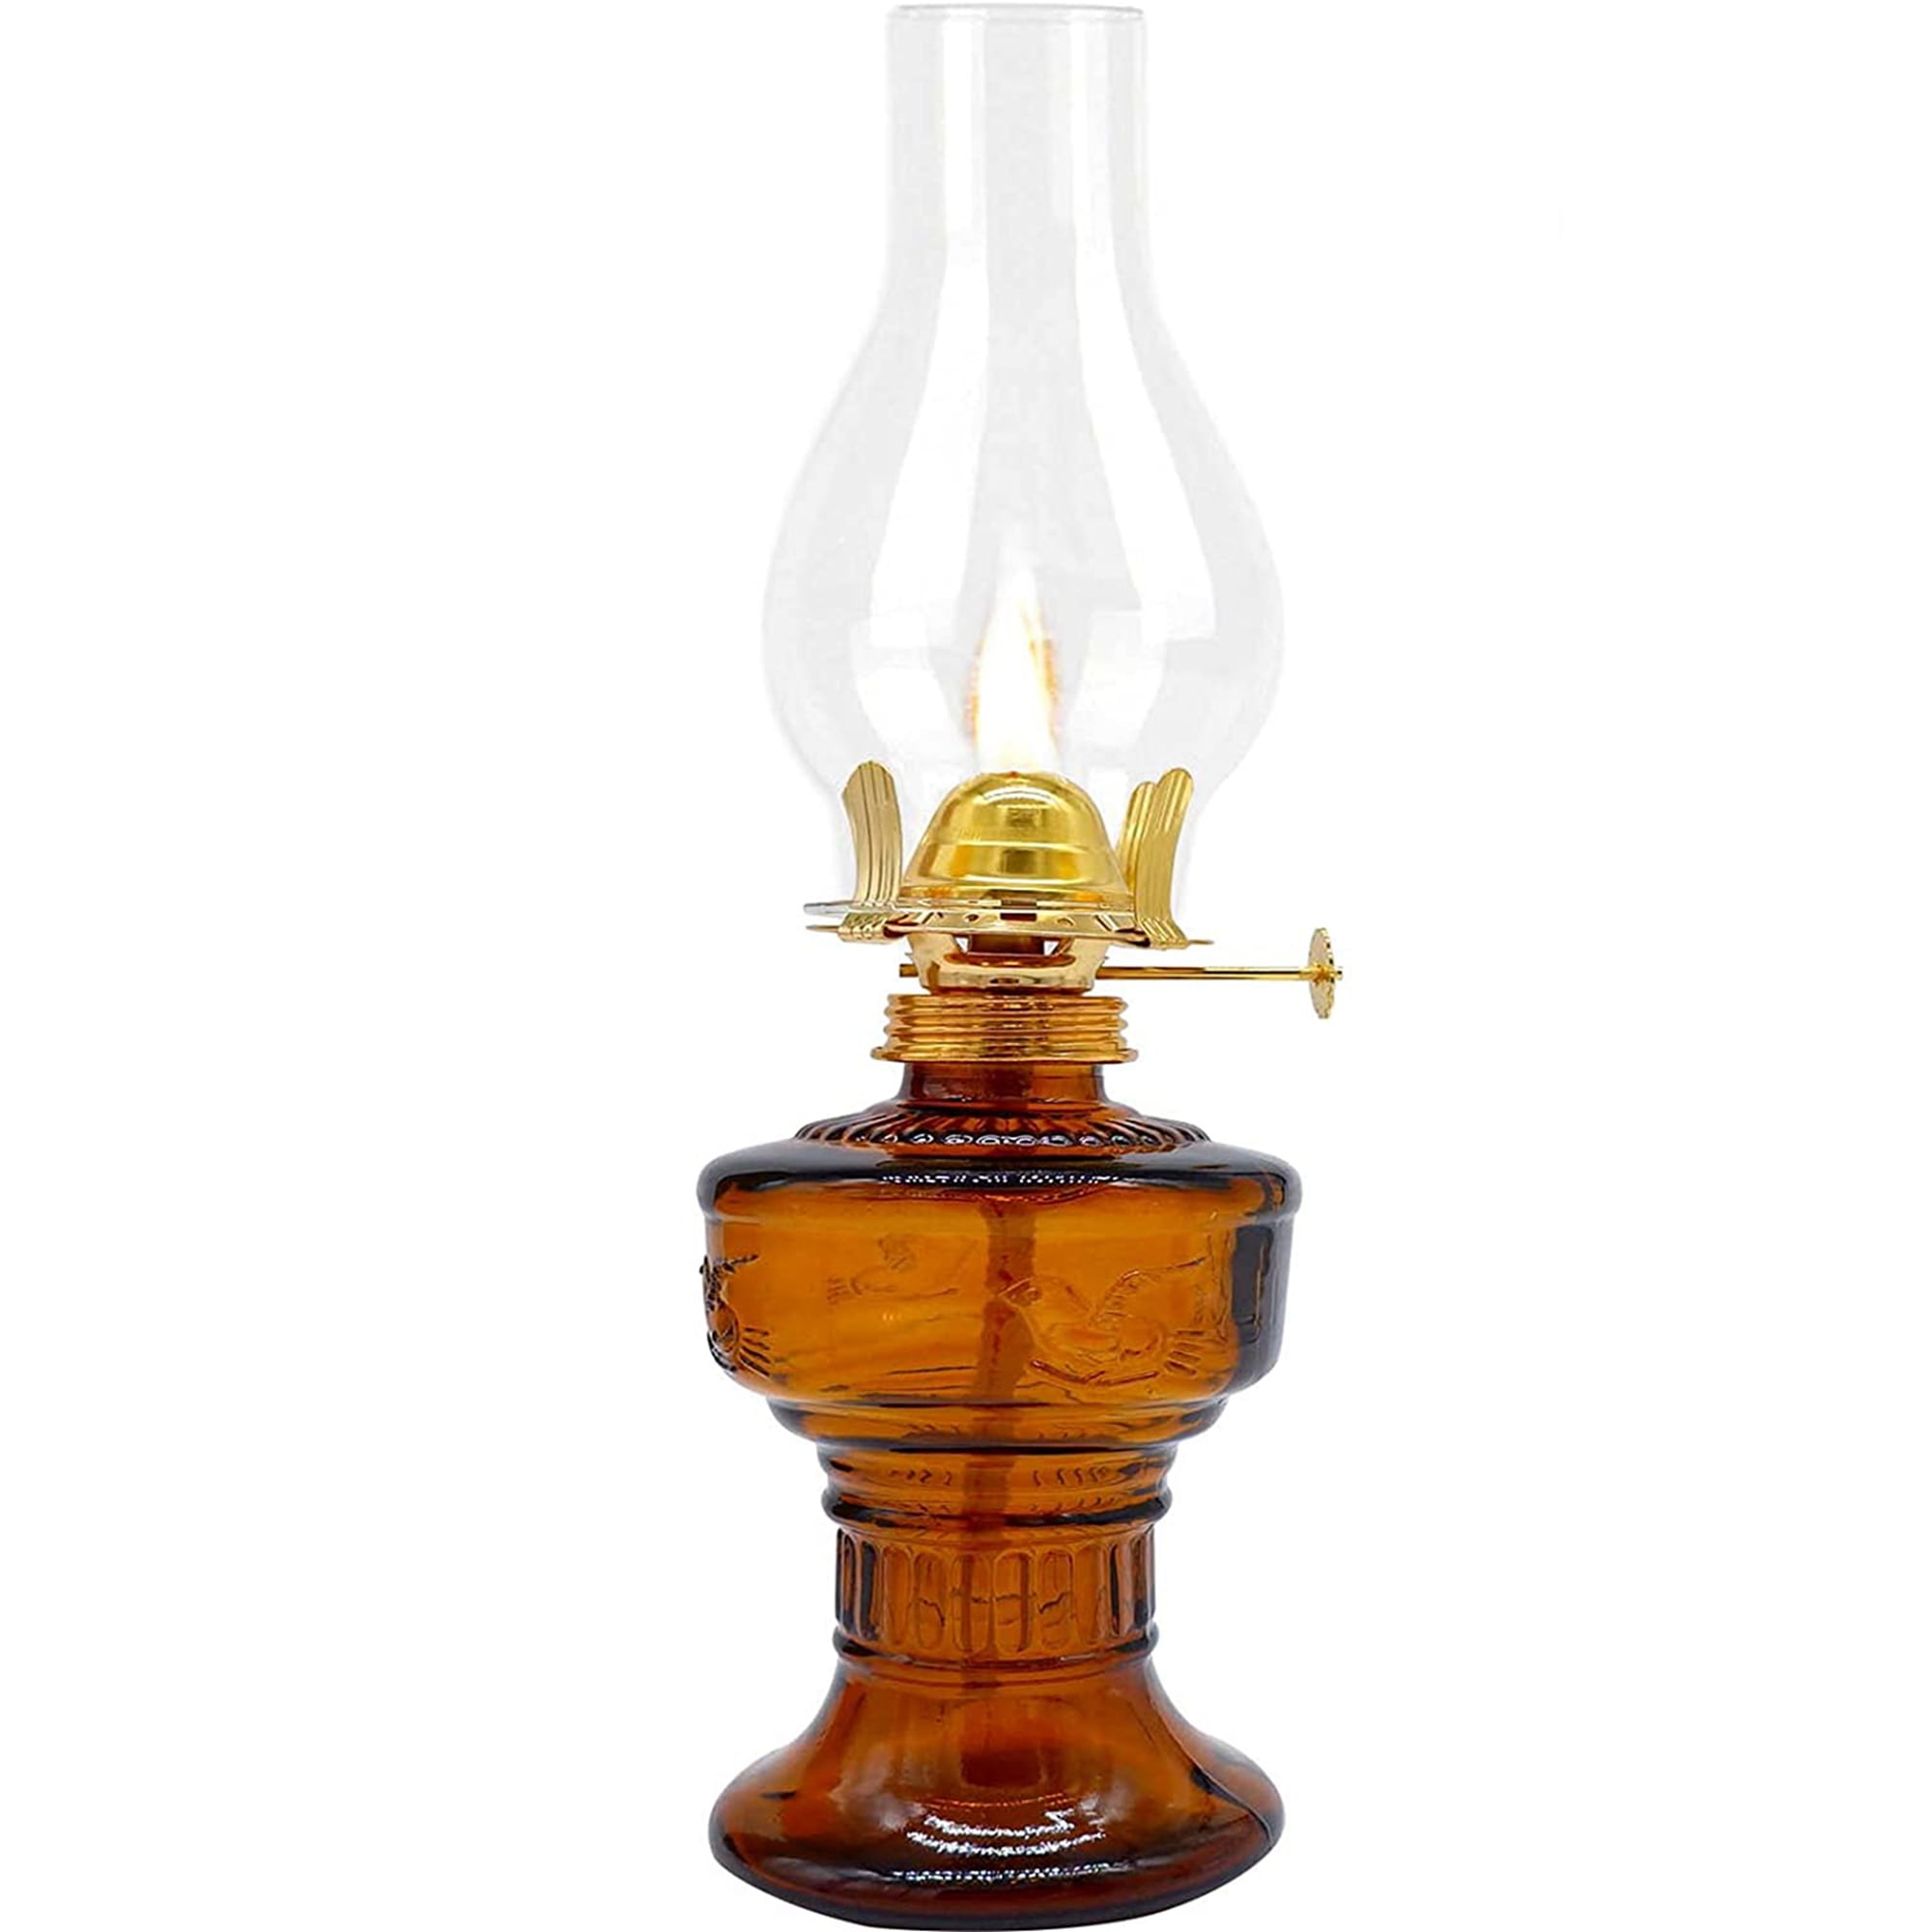 Large Glass Kerosene Oil Lamp Lantern Vintage Four-Claw Oil Lamps for  Indoor Use Decor Chamber Hurricane Lamp Home Lighting Clear Kerosene Lamp  Lanterns 